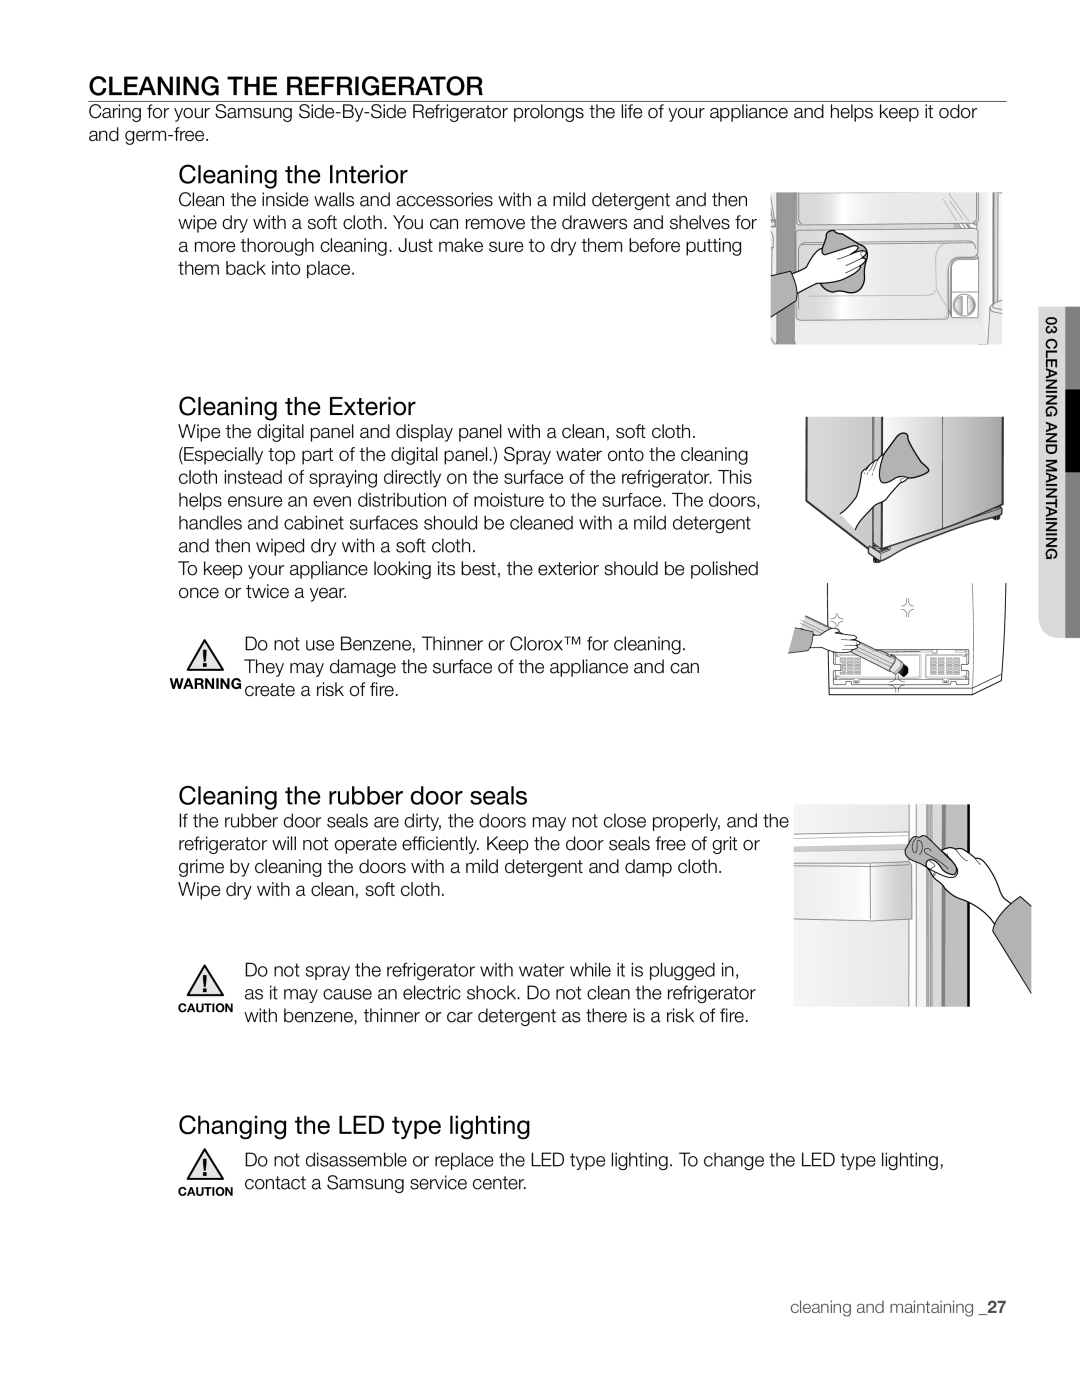 Samsung RS267TDBP Cleaning The Refrigerator, Cleaning the Interior, Cleaning the Exterior, Cleaning the rubber door seals 